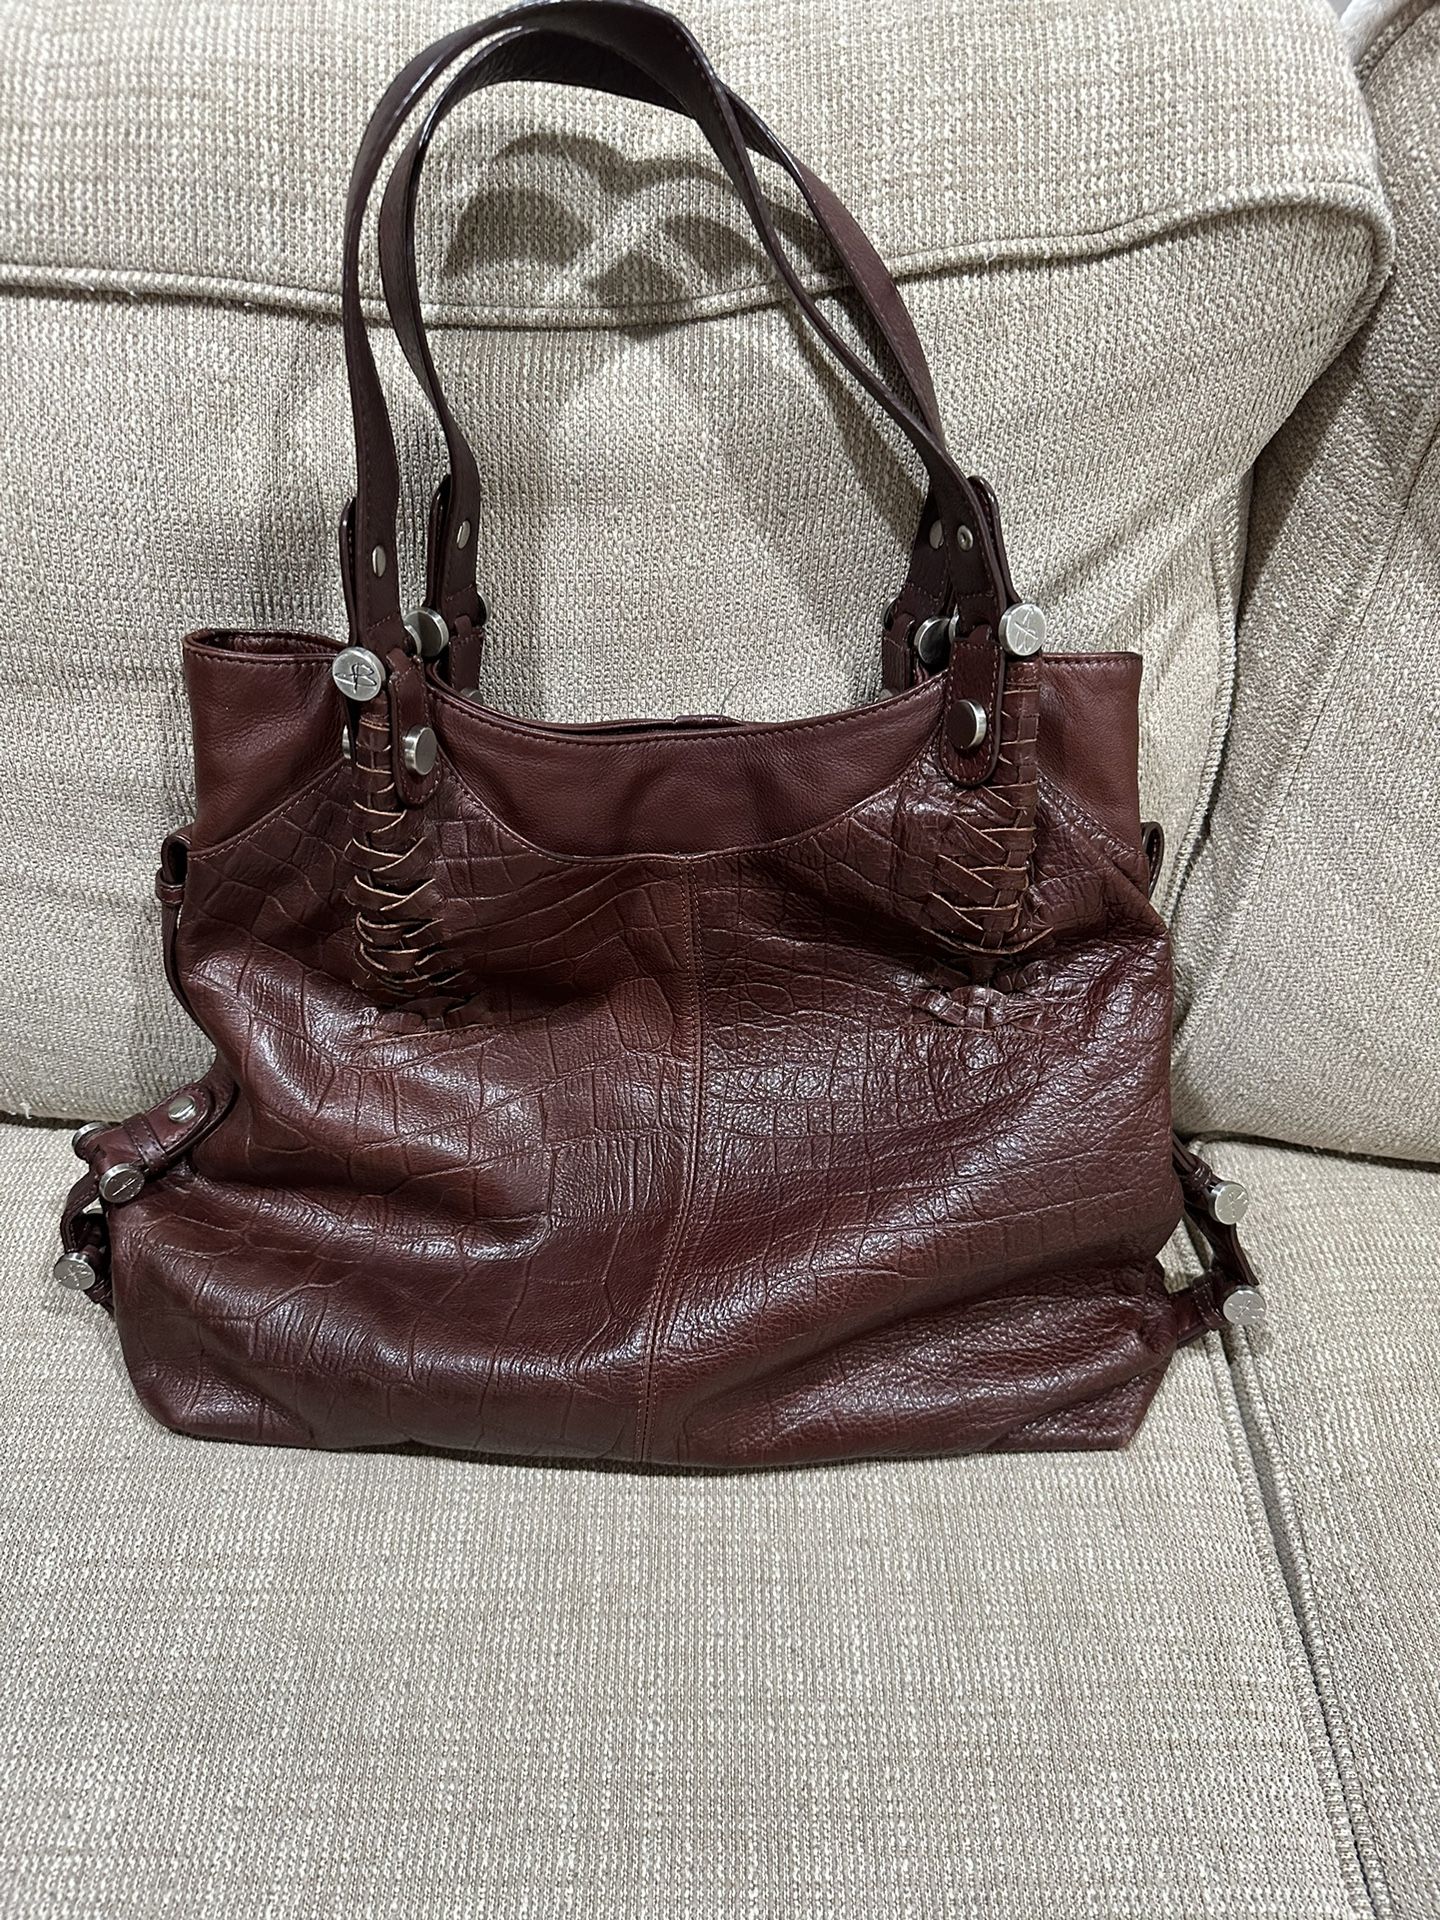 B Makowsky Leather Bag